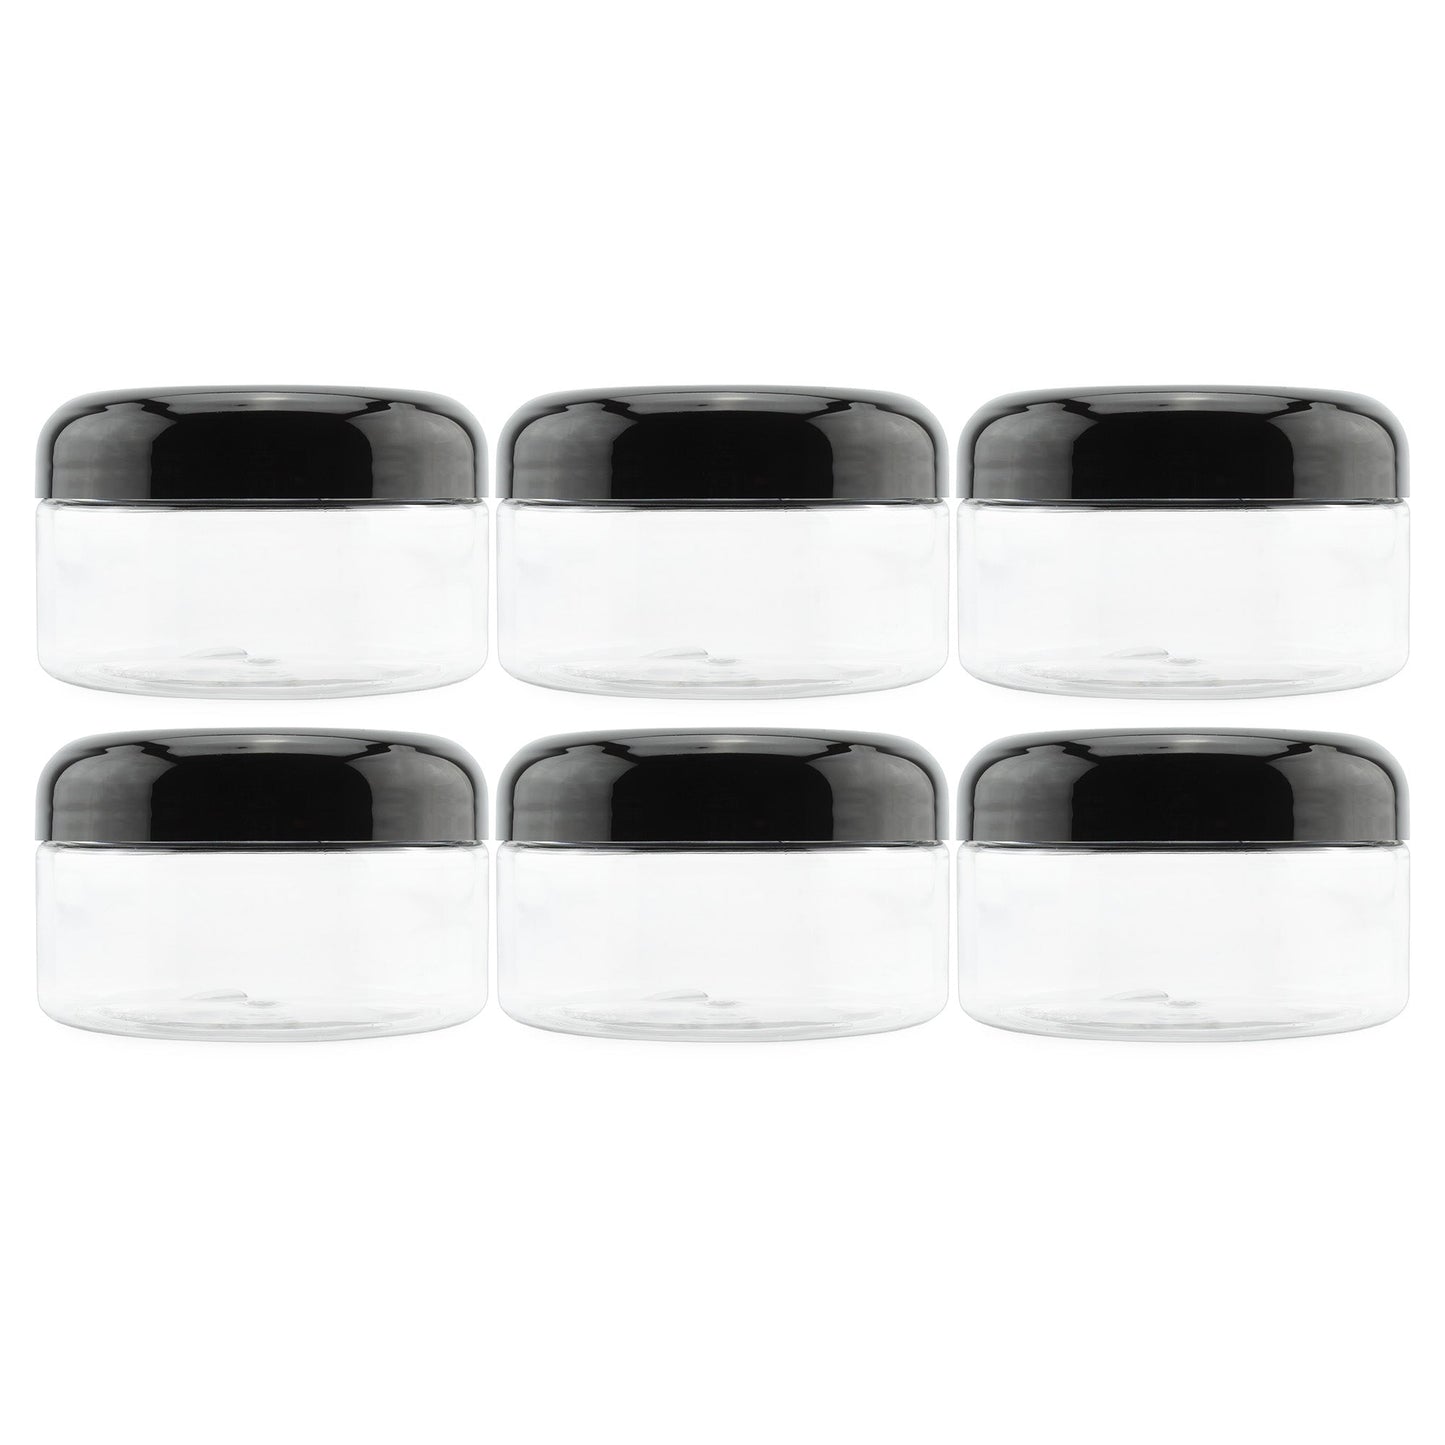 8oz Clear Plastic Jars with Black Plastic Lids (6 pack) - sh1323cb0mnw